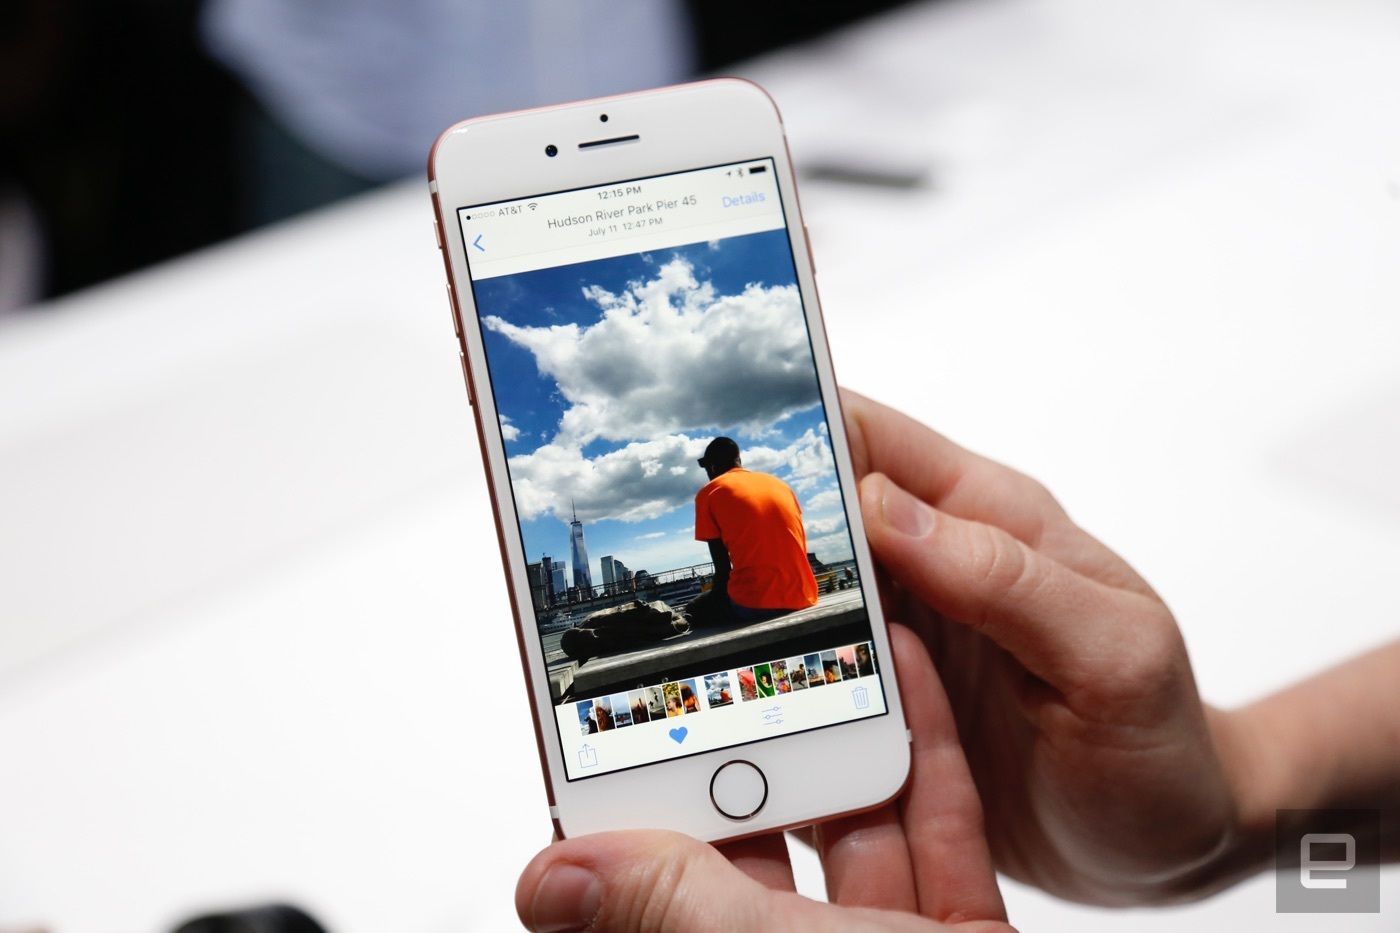 Cómo buscar objetos en fotos o imágenes en iPhone o iPad